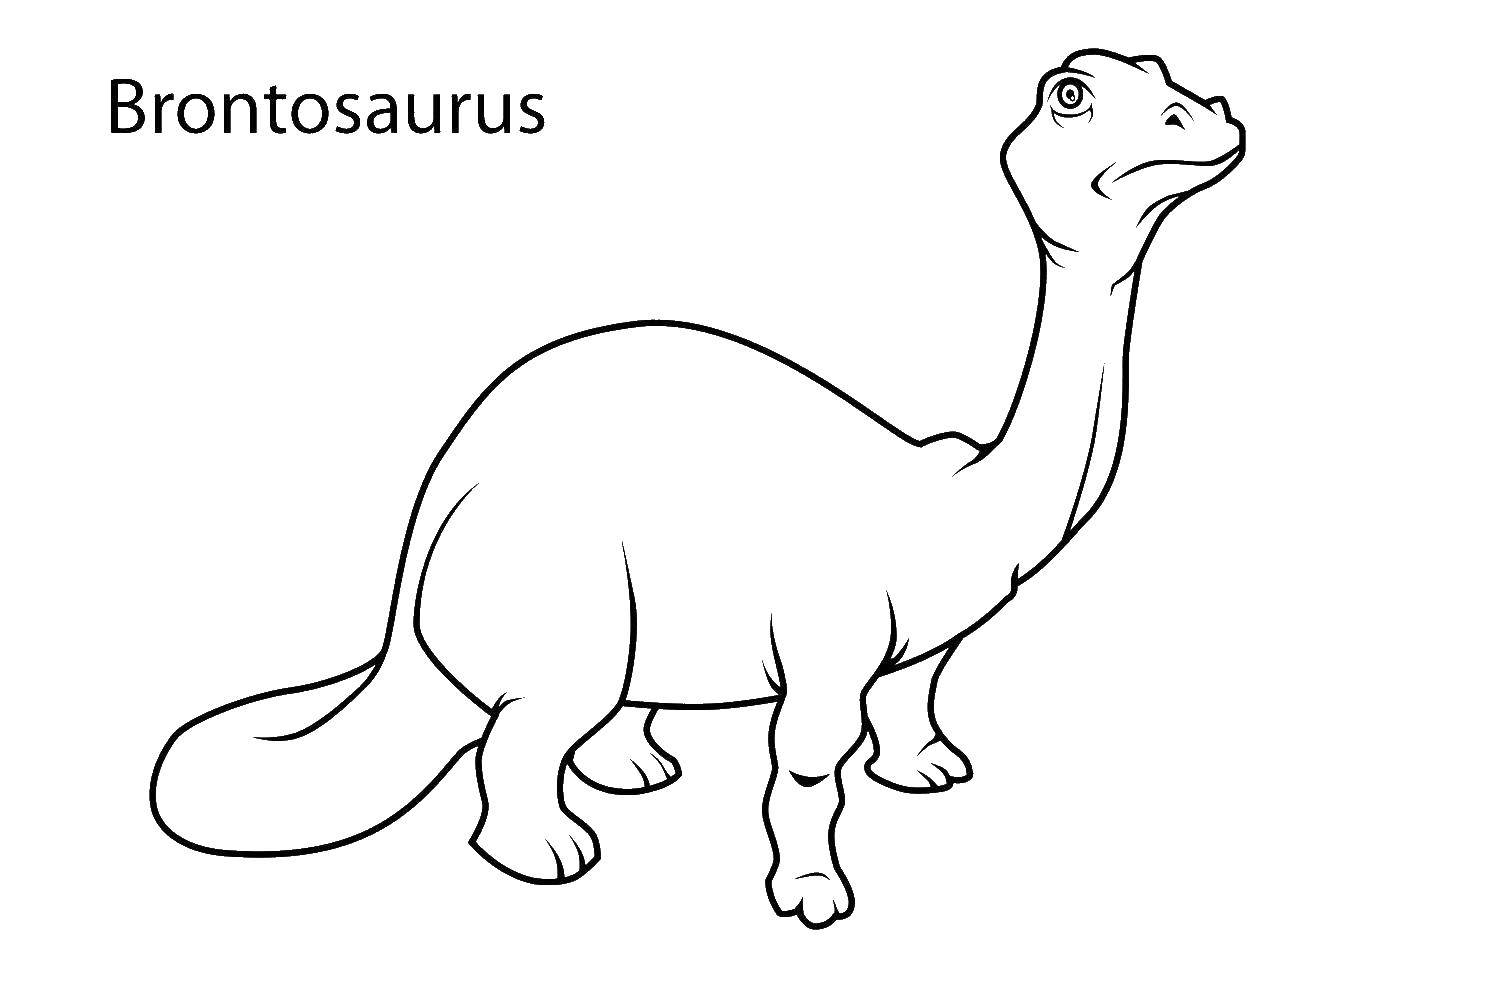 Coloring Brontosaur. Category dinosaur. Tags:  Dinosaurs, Brontosaurus.